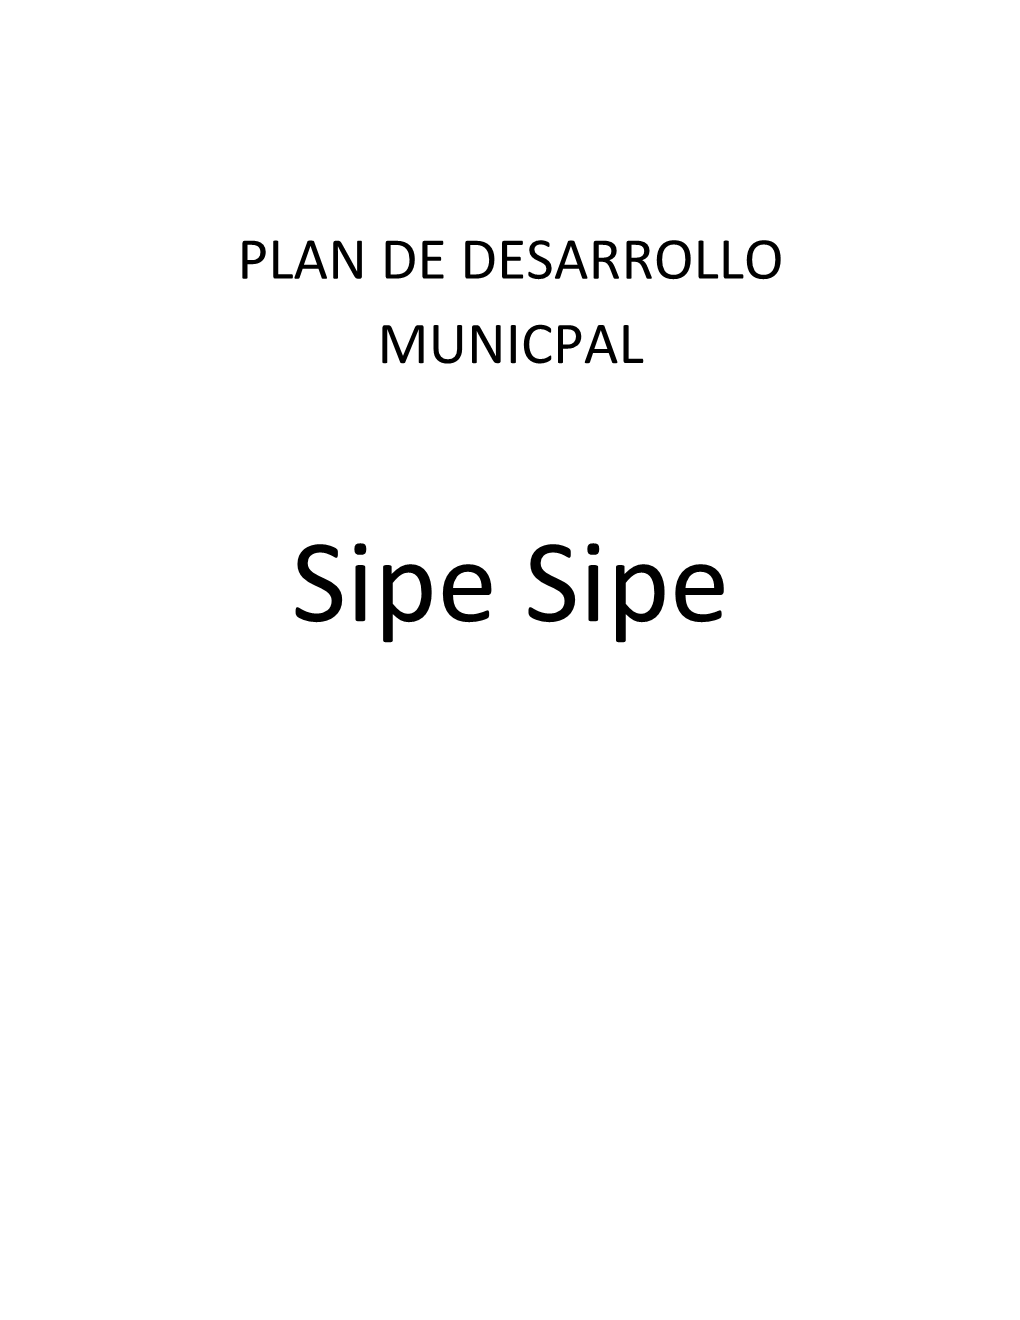 Diagnostico Del Municipio De Sipe Sipe